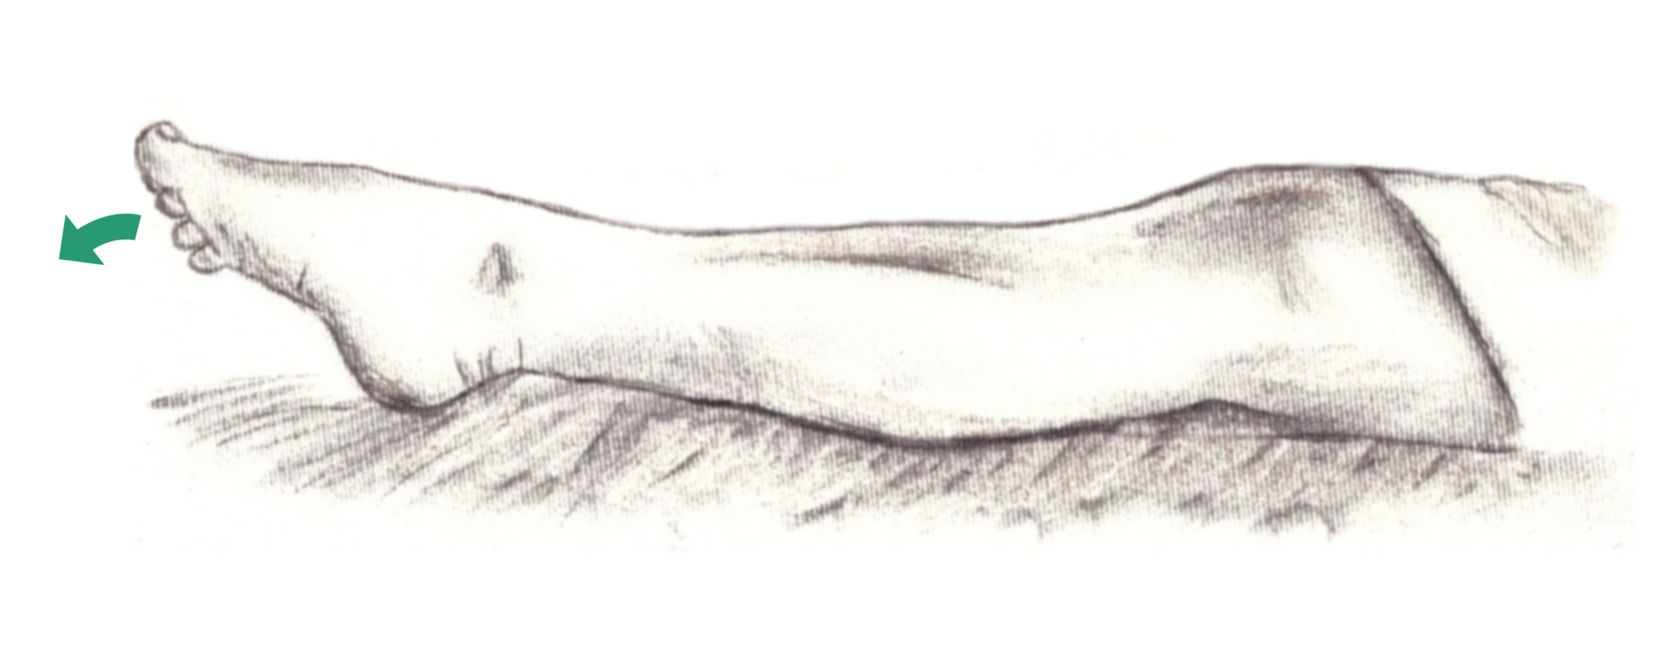 rilassamento muscolare progressivo sui muscoli del polpaccio